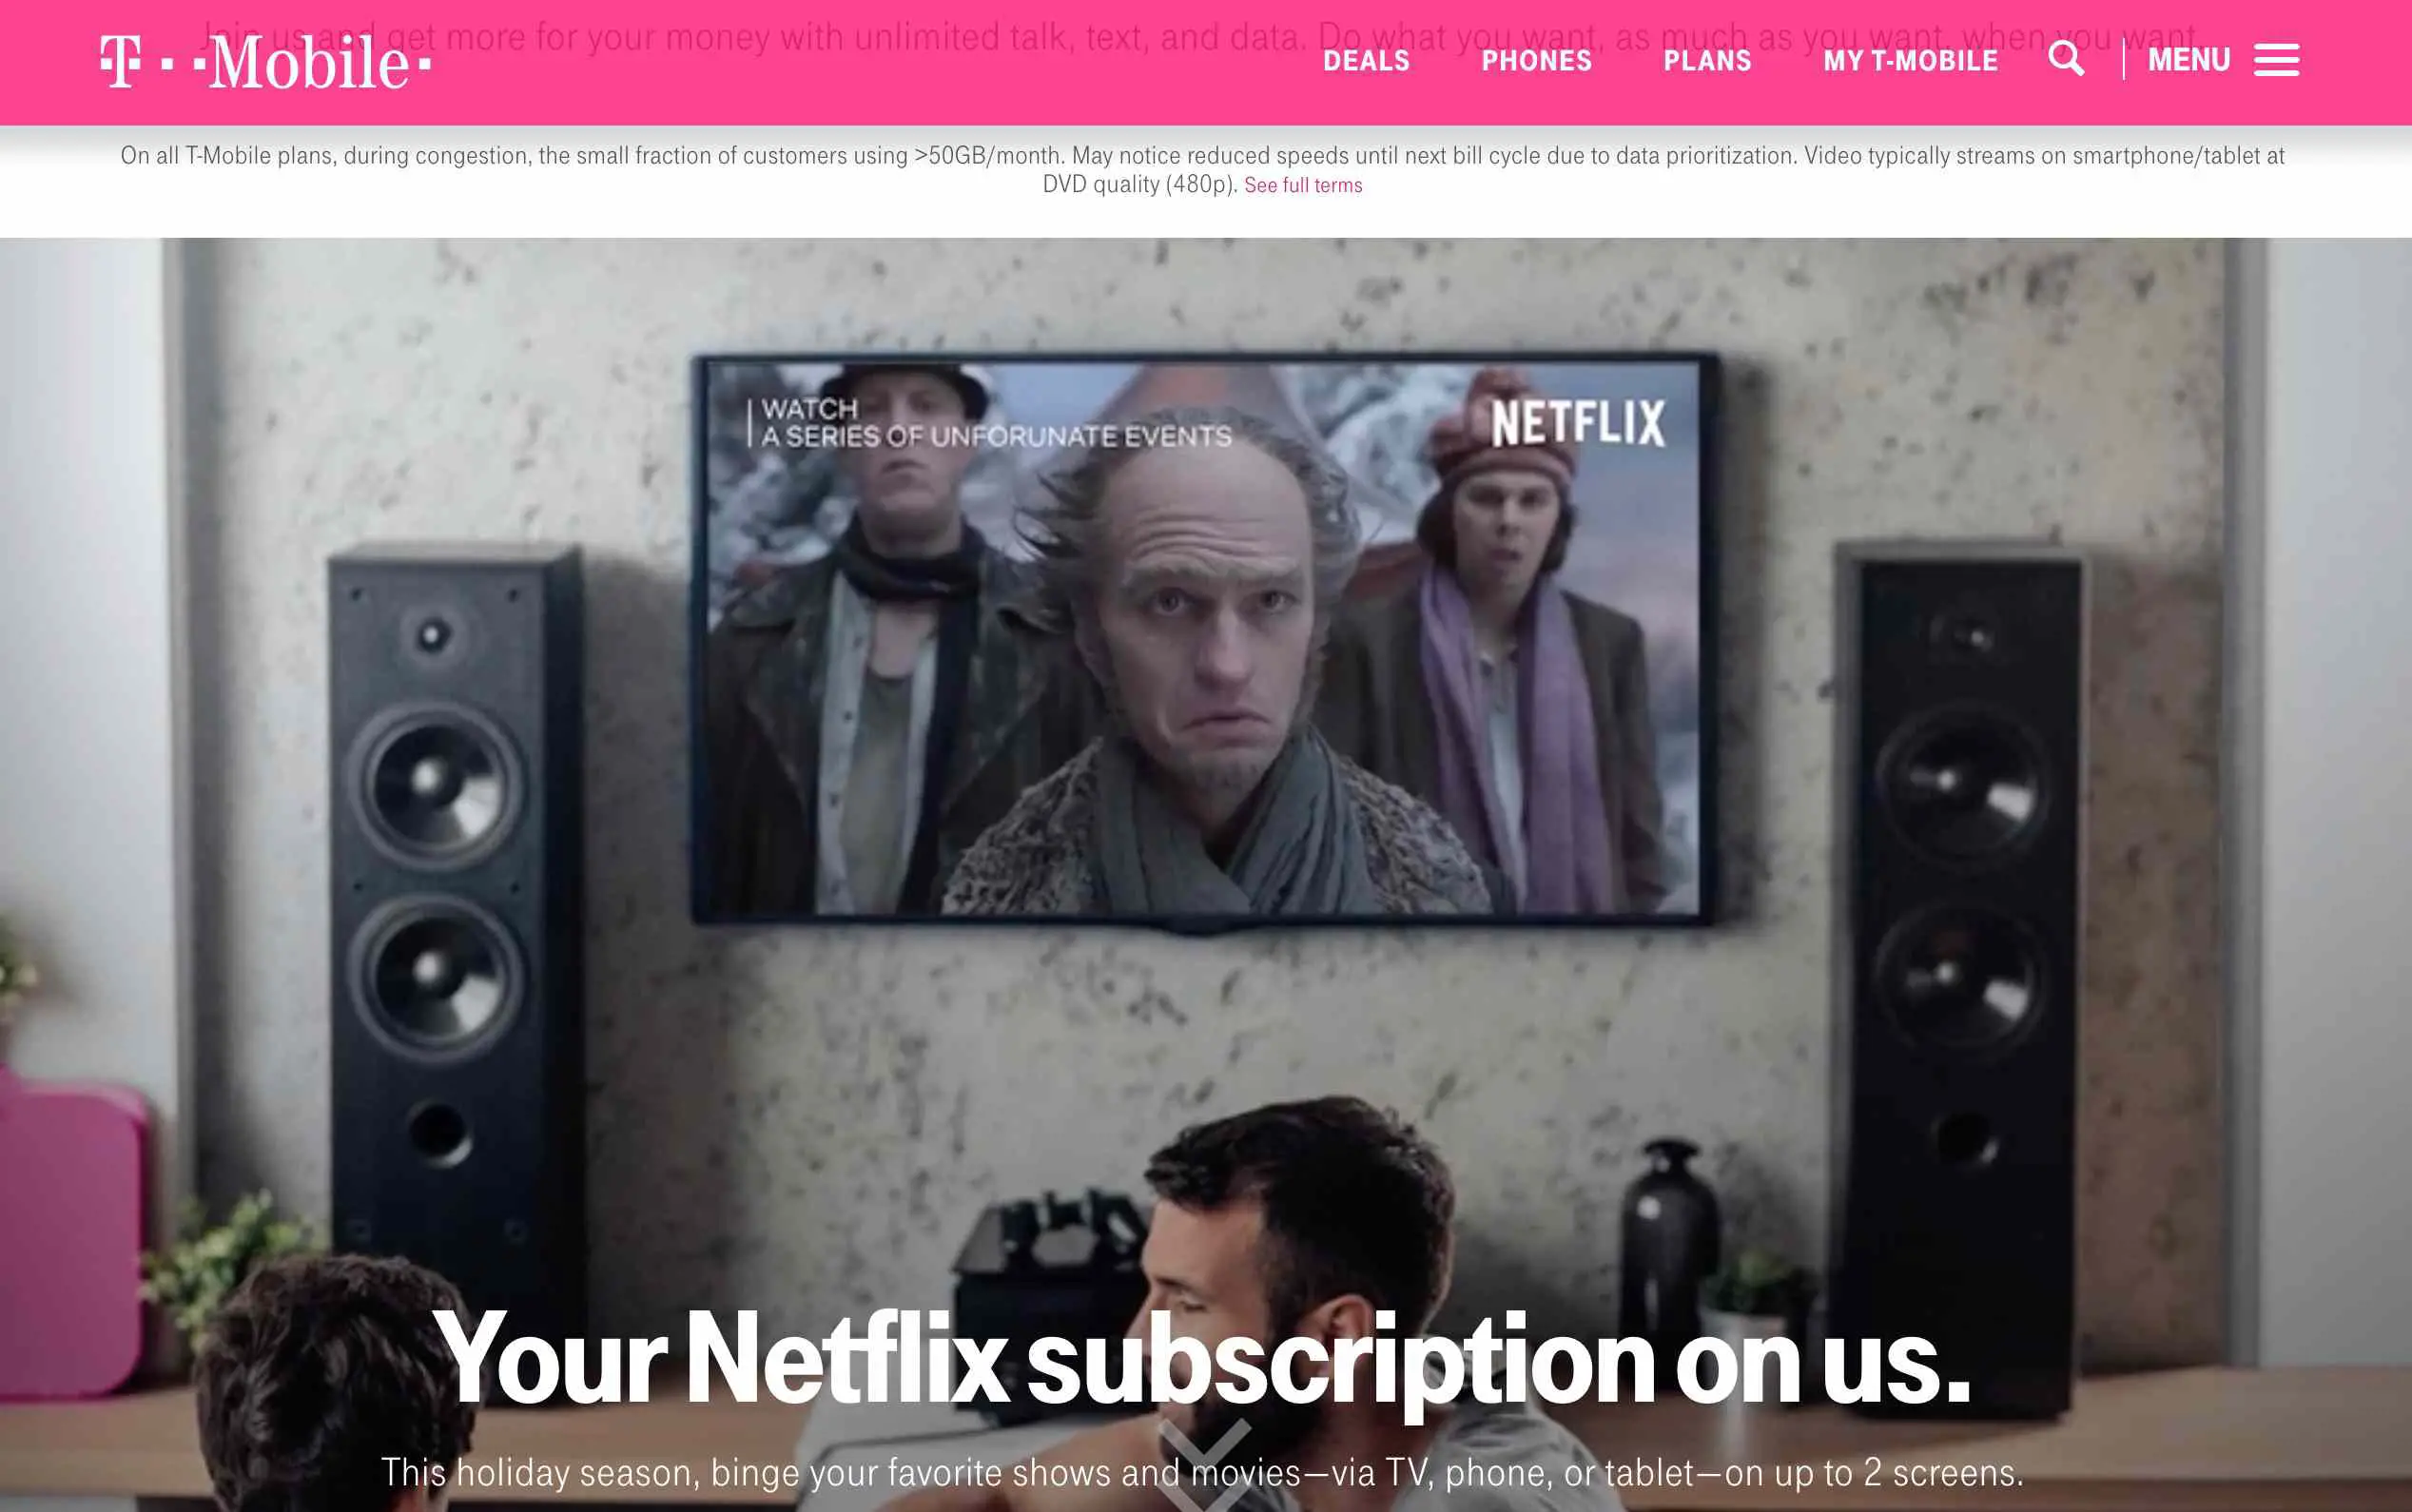 Página da web da T-Mobile mostrando oferta da Netflix